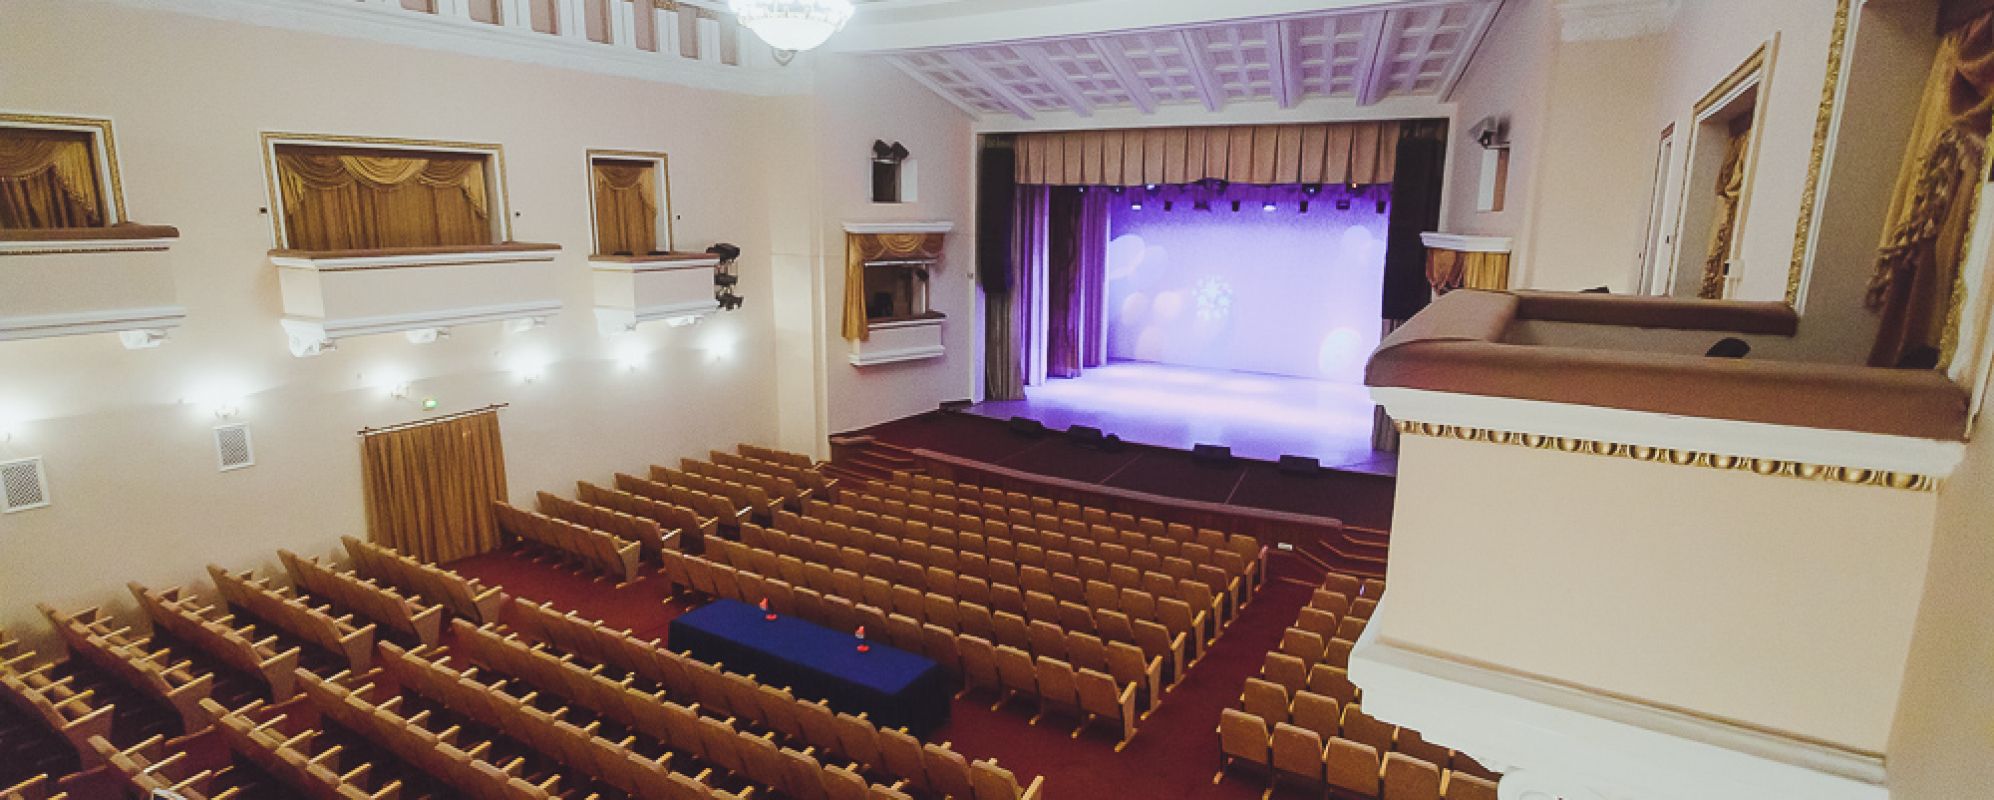 Фотографии концертного зала Большой зал Дома офицеров Забайкальского края